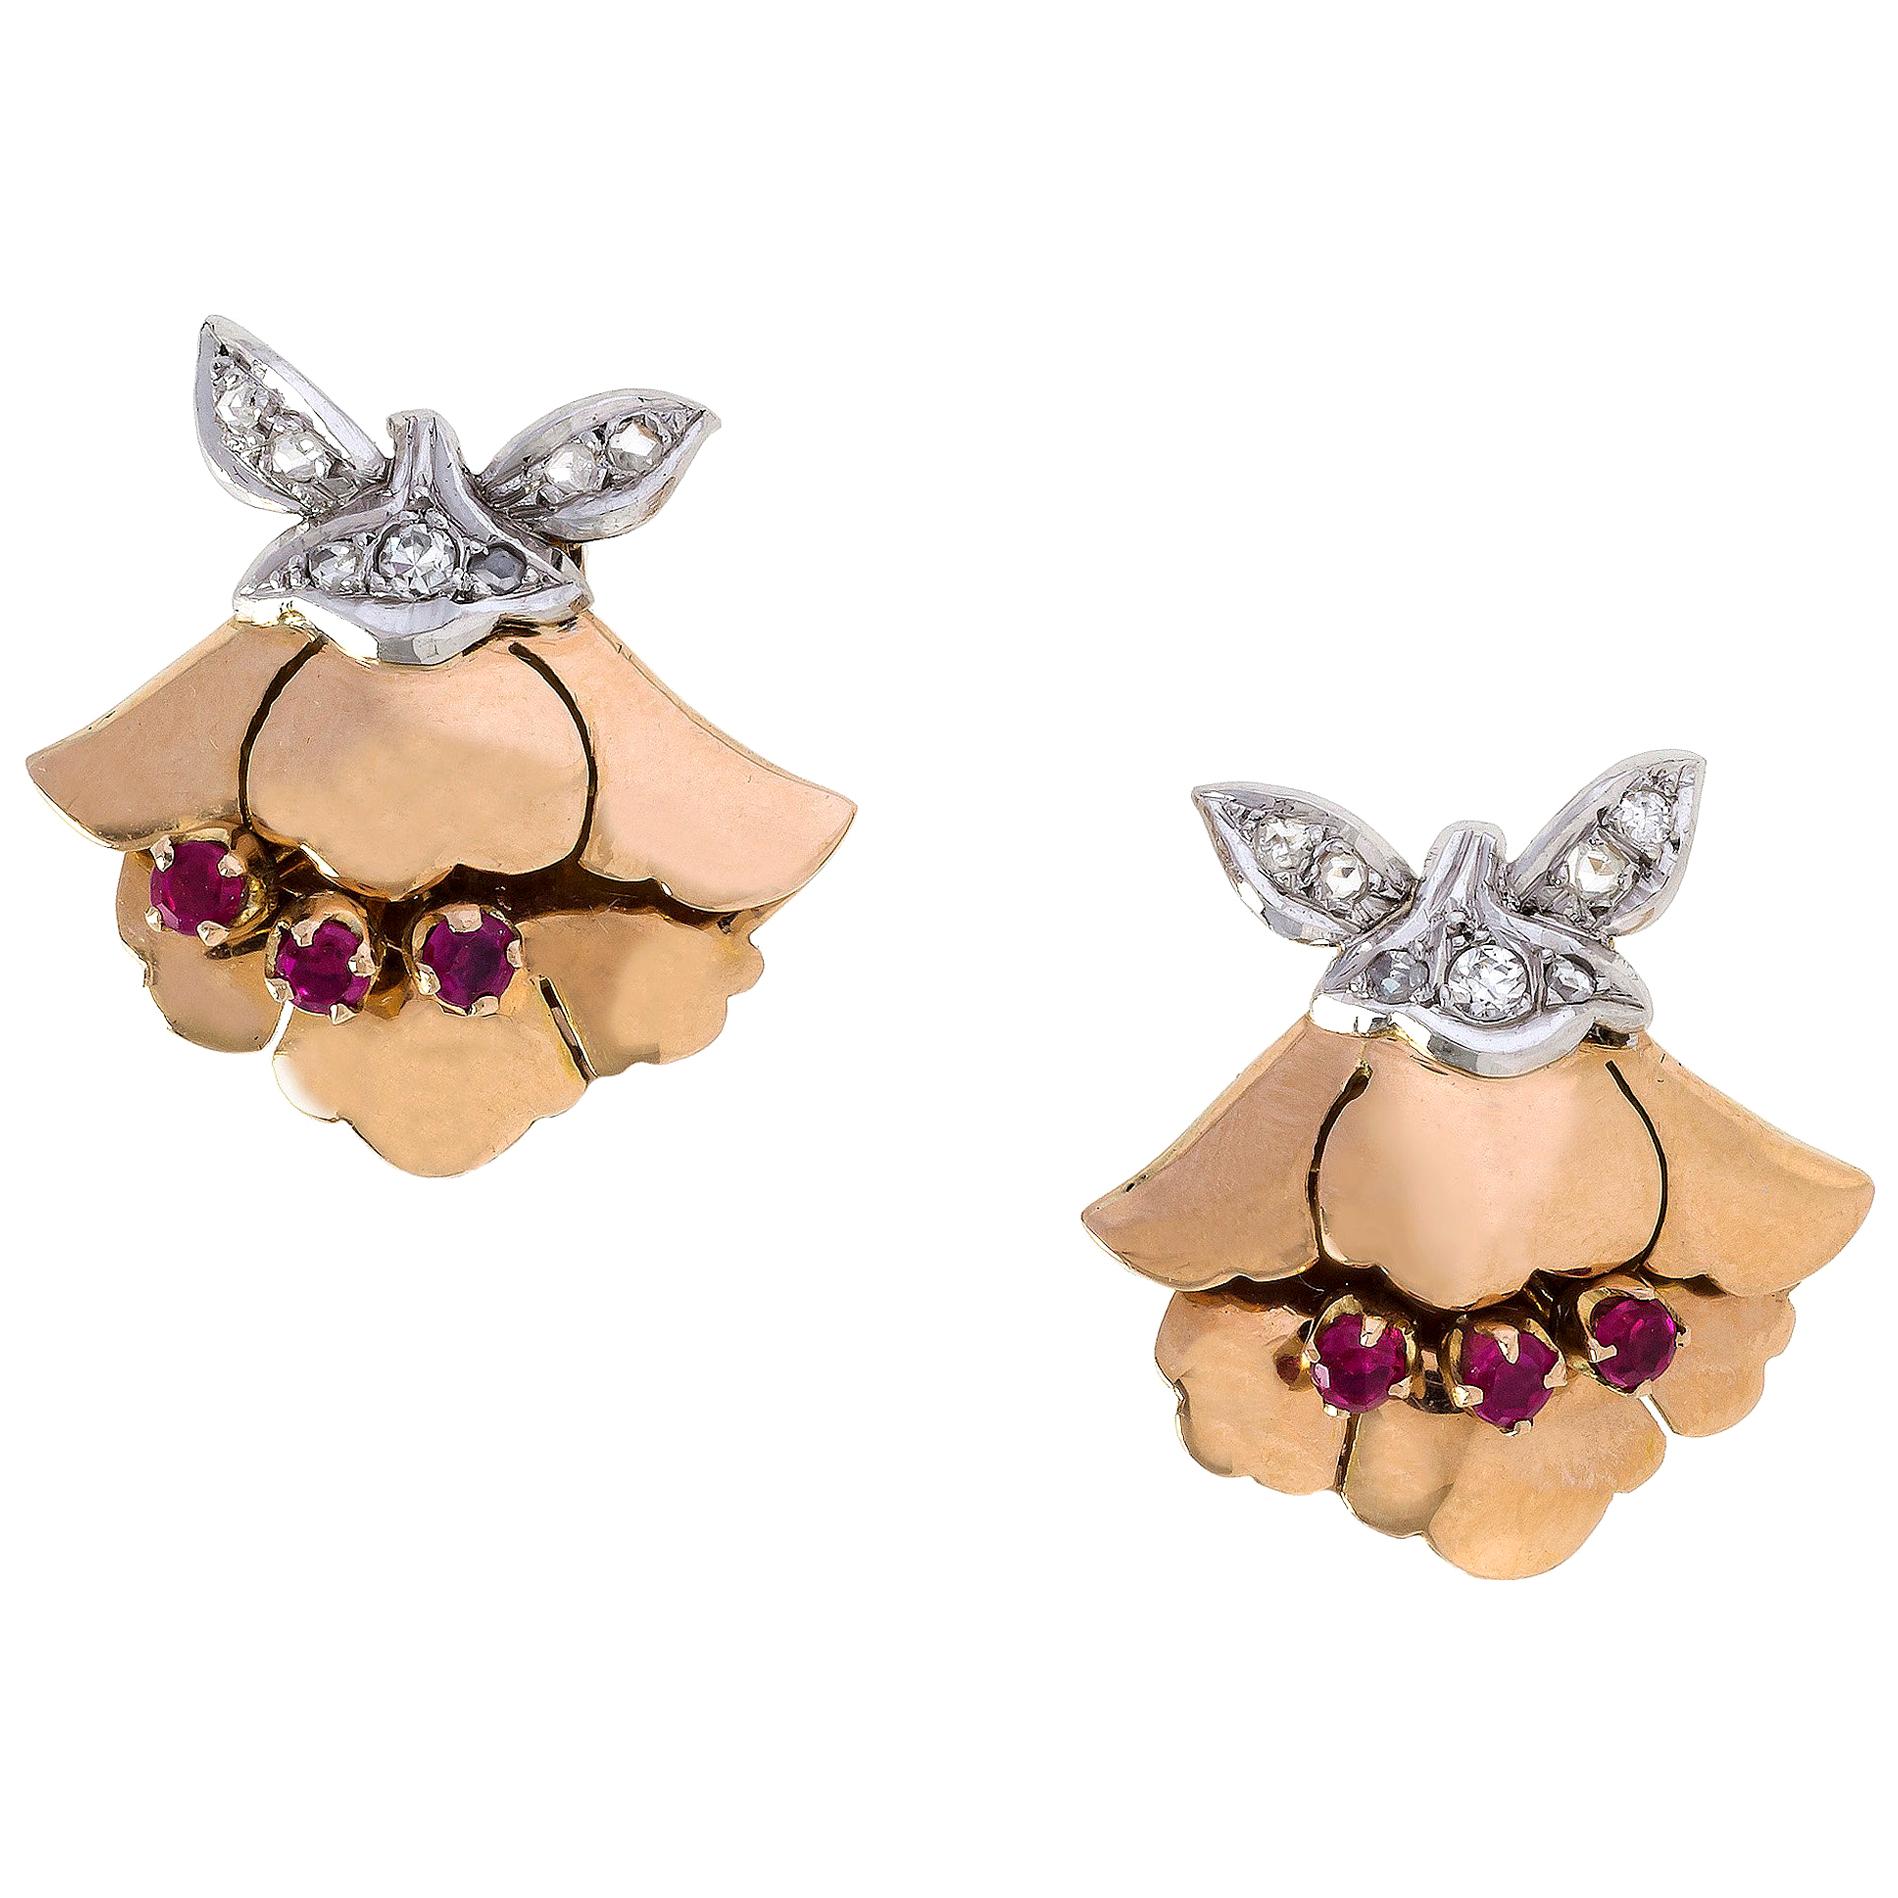 Die Ohrclips aus 14 k Gold können auch als Kleiderclips getragen werden. Sie sind als Blüten mit rubinrot gefassten Stempeln und kleinen Blättern gestaltet. Die Gefäße und Blätter sind aus 14-karätigem Weißgold gefertigt und mit Diamanten besetzt.